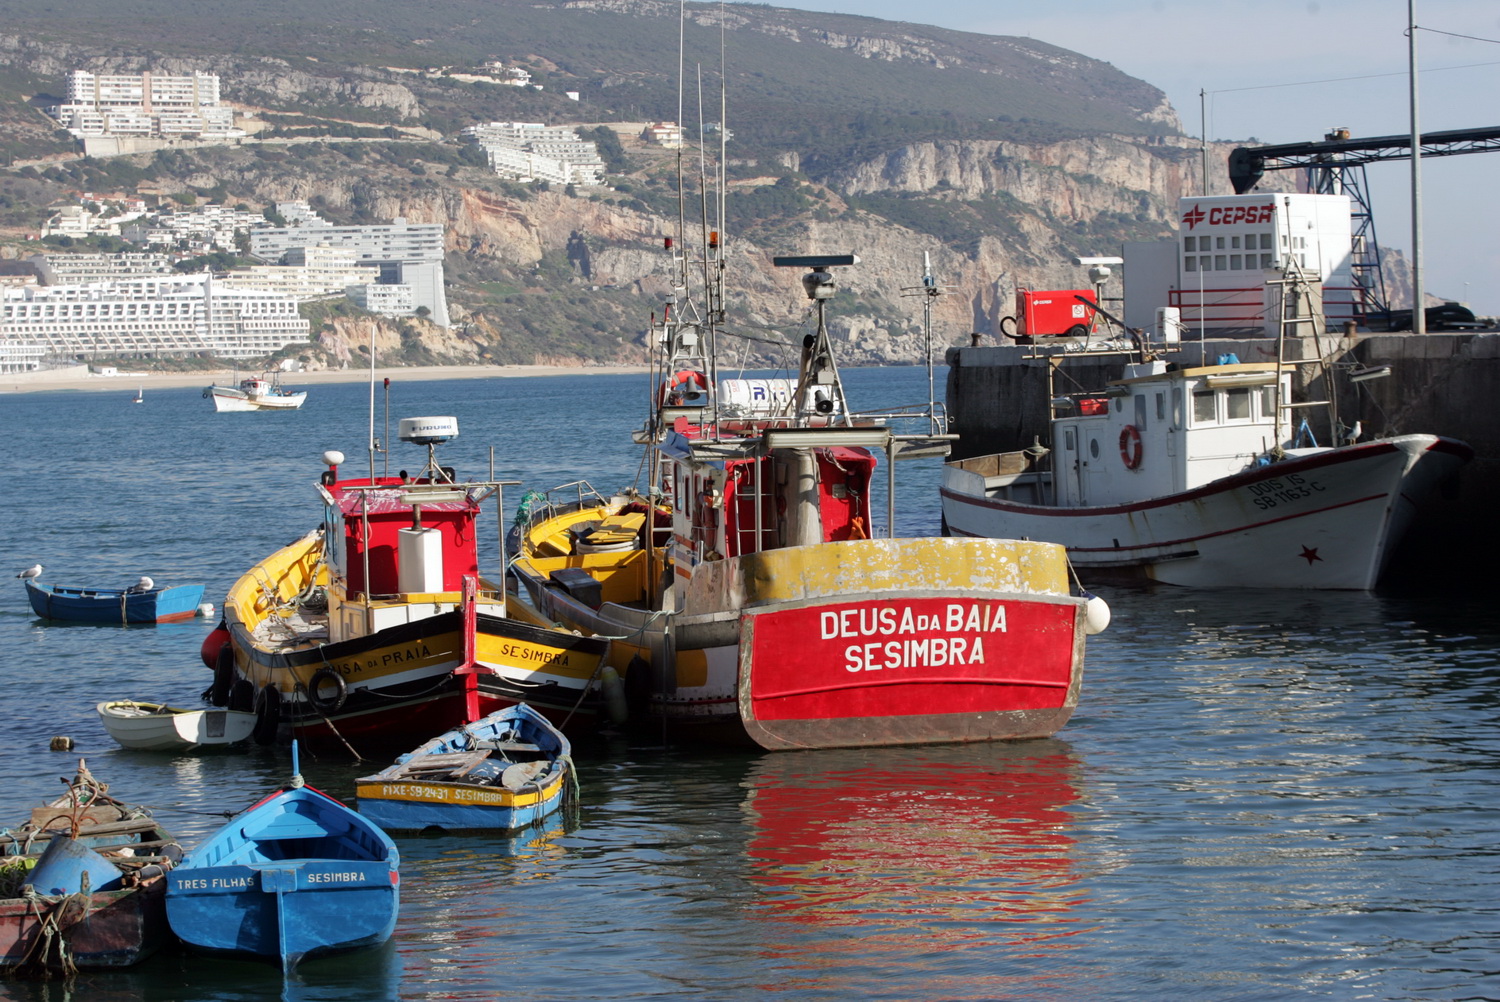 Conoce Sesimbra, un pequeño pueblo de pescadores portugues